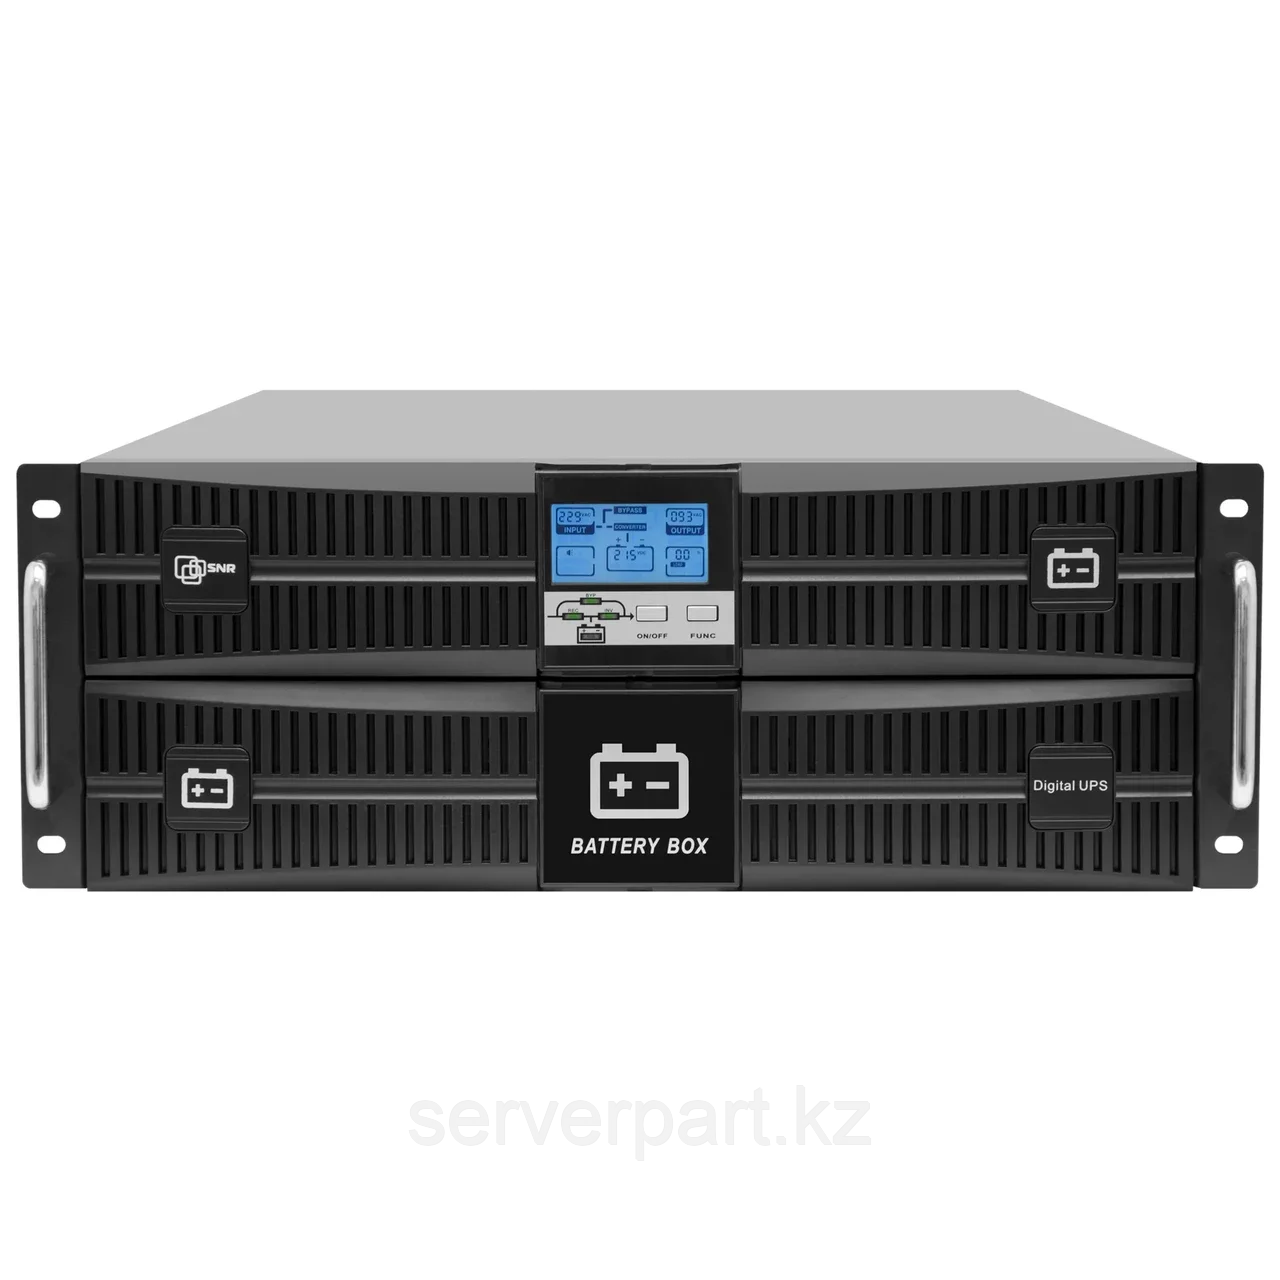 ИБП SNR On-line , Rackmount 4U, серии Intelligent 6 000 Ва / 6 000 Вт, клеммный терминал, SNMP слот